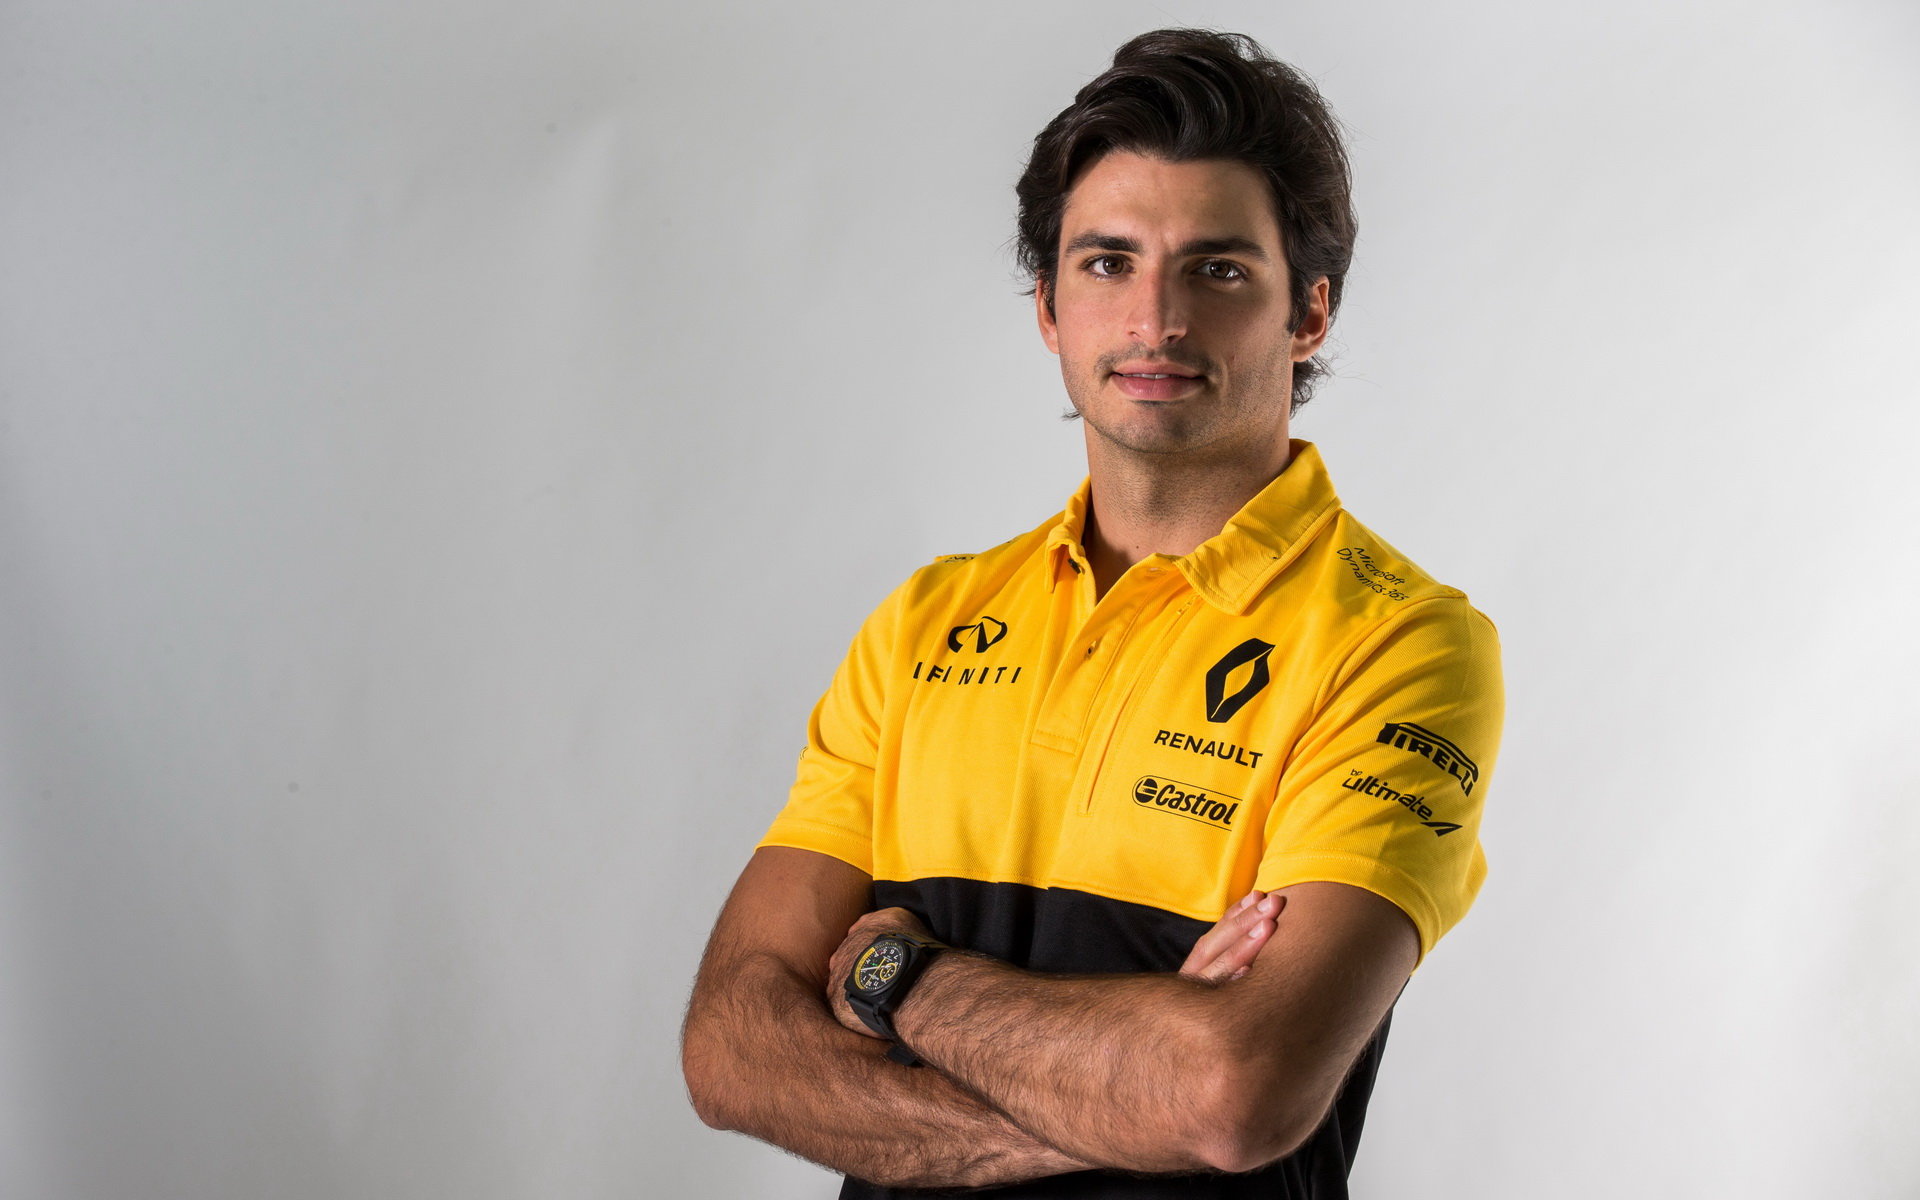 Carlos Sainz je u Renaultu spokojený, věří v další pokrok týmu